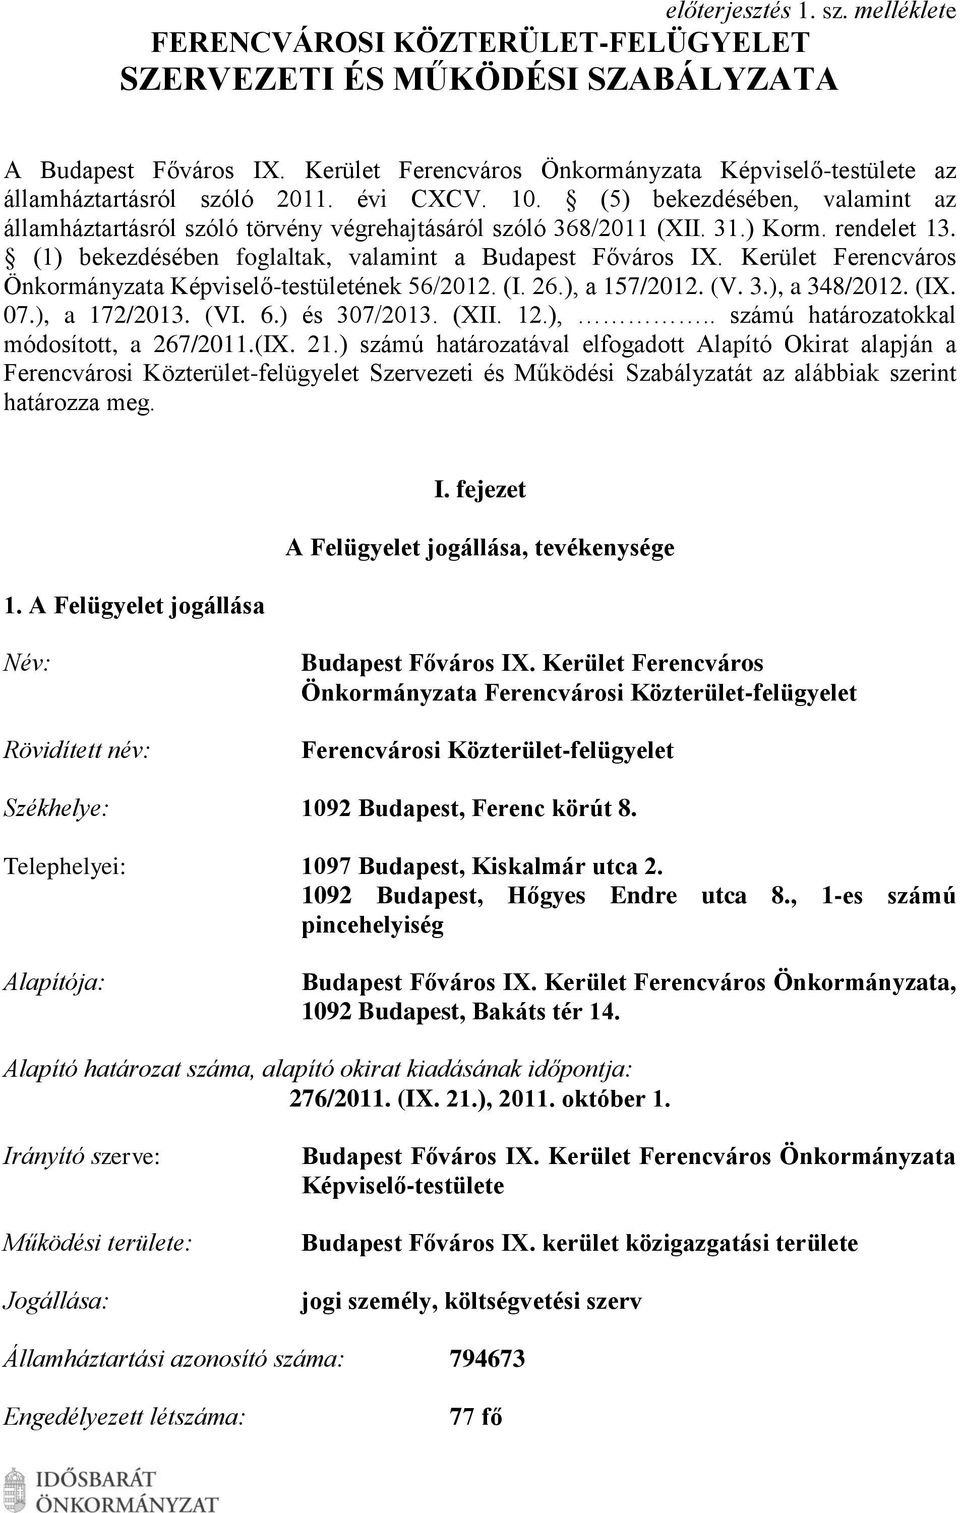 31.) Korm. rendelet 13. (1) bekezdésében foglaltak, valamint a Budapest Főváros I. Kerület Ferencváros Önkormányzata Képviselő-testületének 56/2012. (I. 26.), a 157/2012. (V. 3.), a 348/2012. (I. 07.